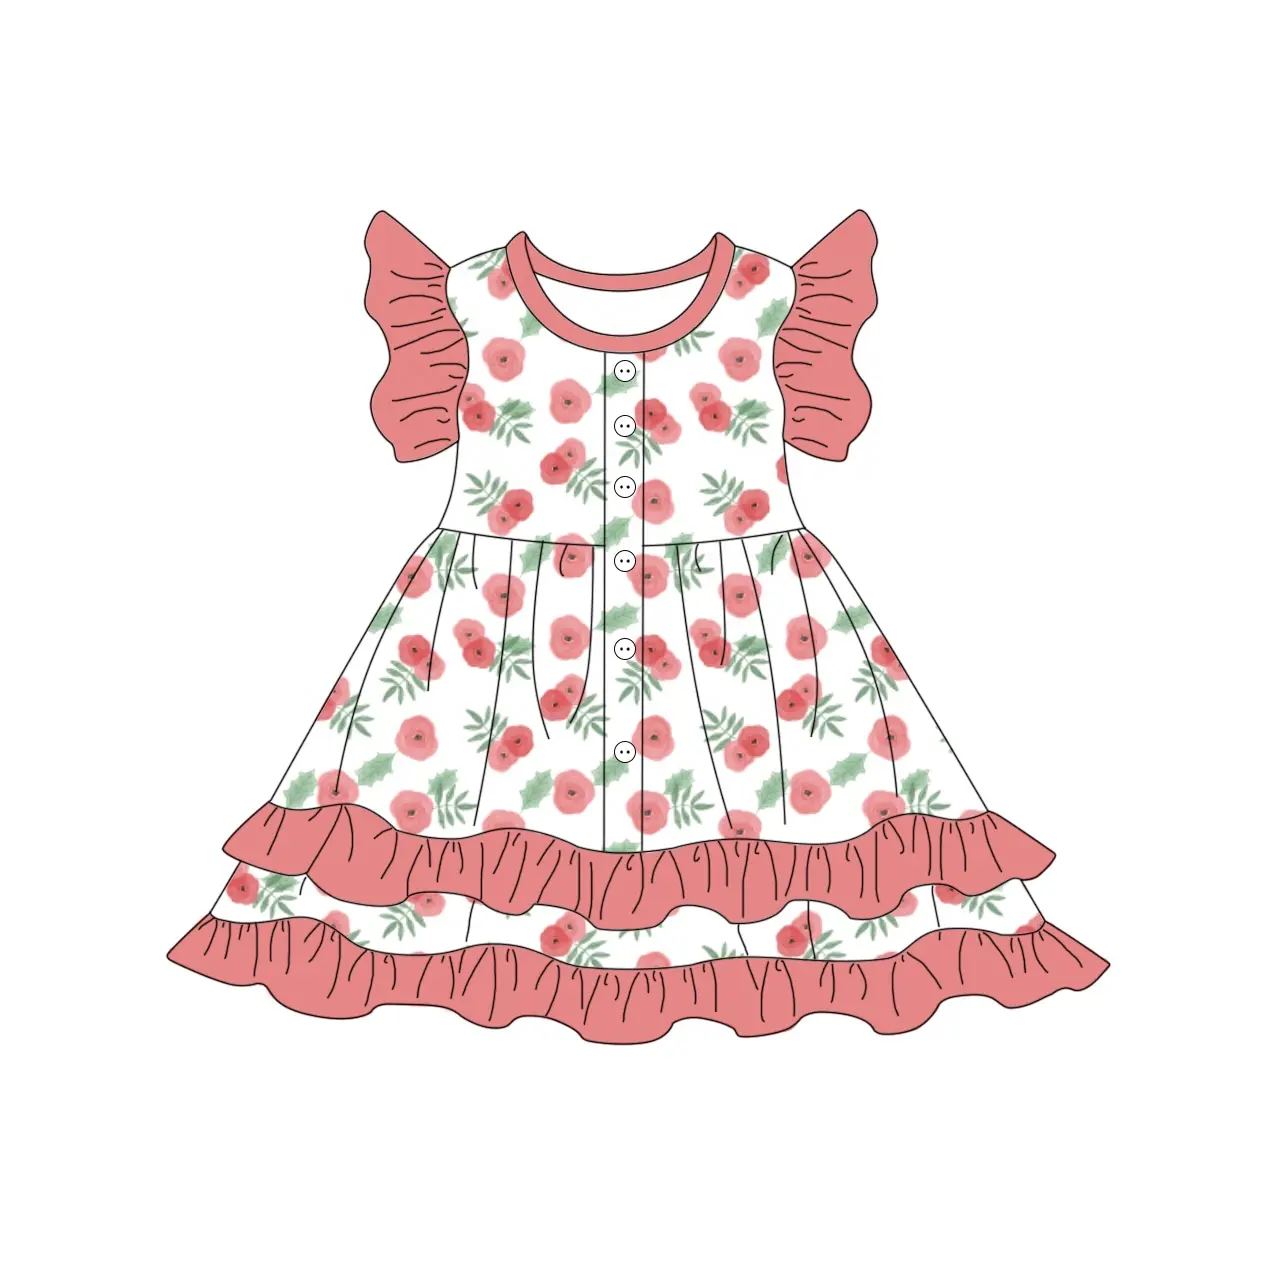 Venta al por mayor Vestidos de bebé Vestidos DE LOS NIÑOS Boda de verano regalos bonitos vestidos de bebé de encaje sin mangas floral